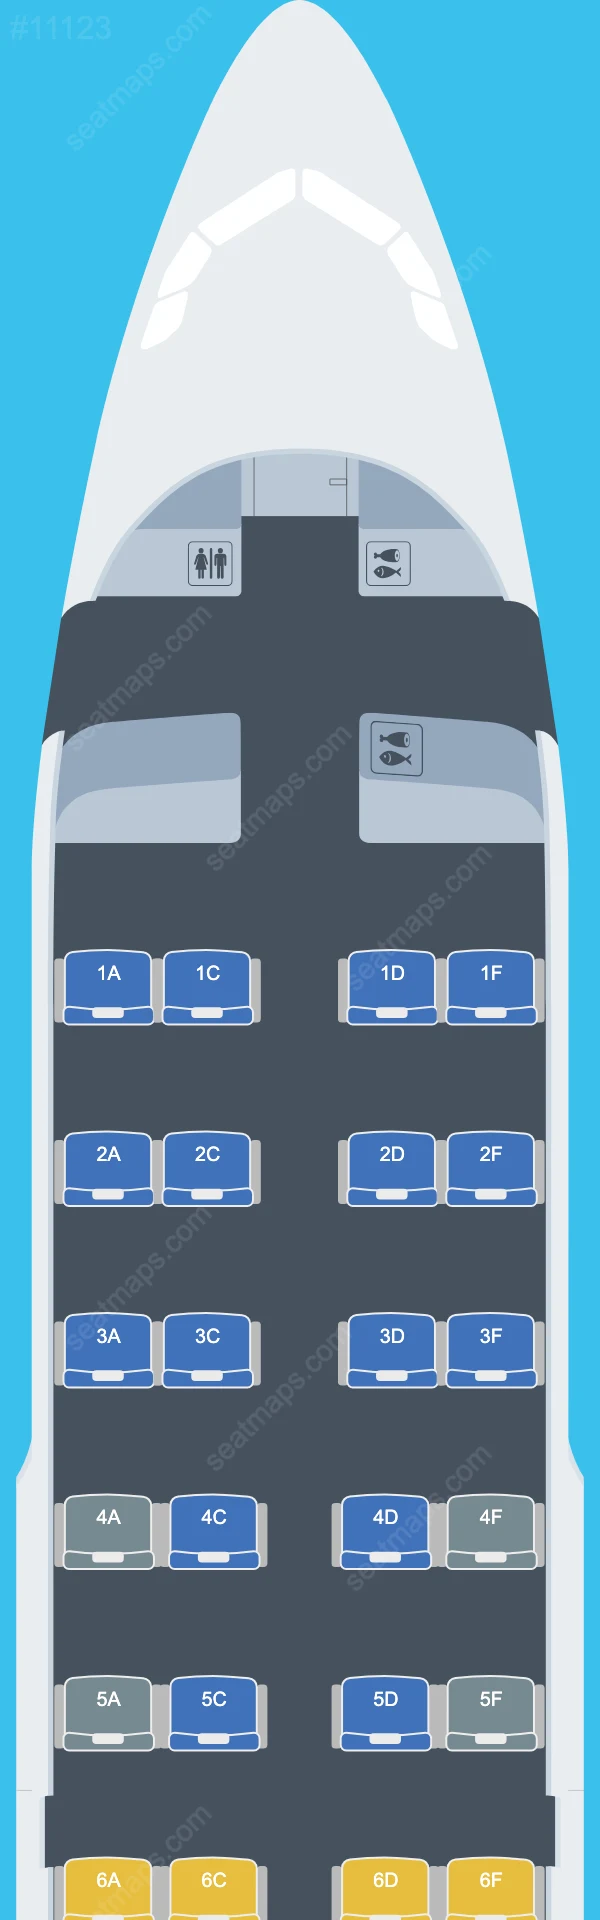 Skytraders Airbus A319 Plan de Salle A319-100